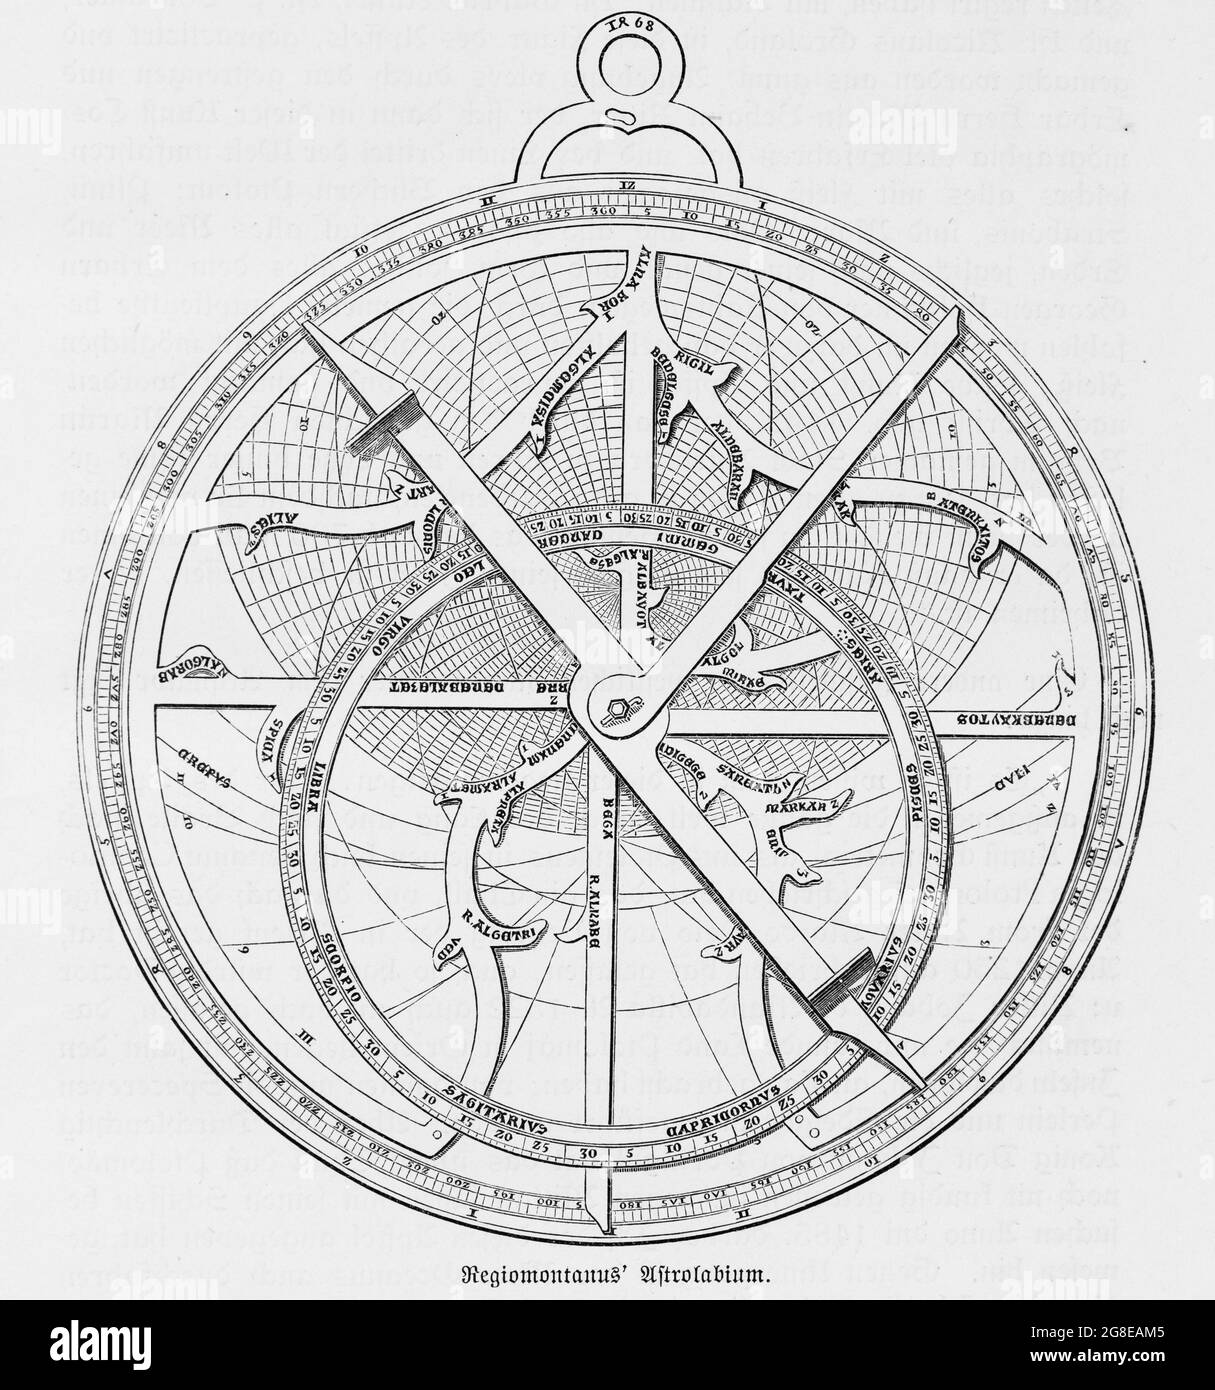 Das Astrolabium ist ein astronomisches Berechnungs- und Messinstrument für die Berechnung der Sternpositionen, das auf dem Seefart verwendet wird, historisch Stockfoto